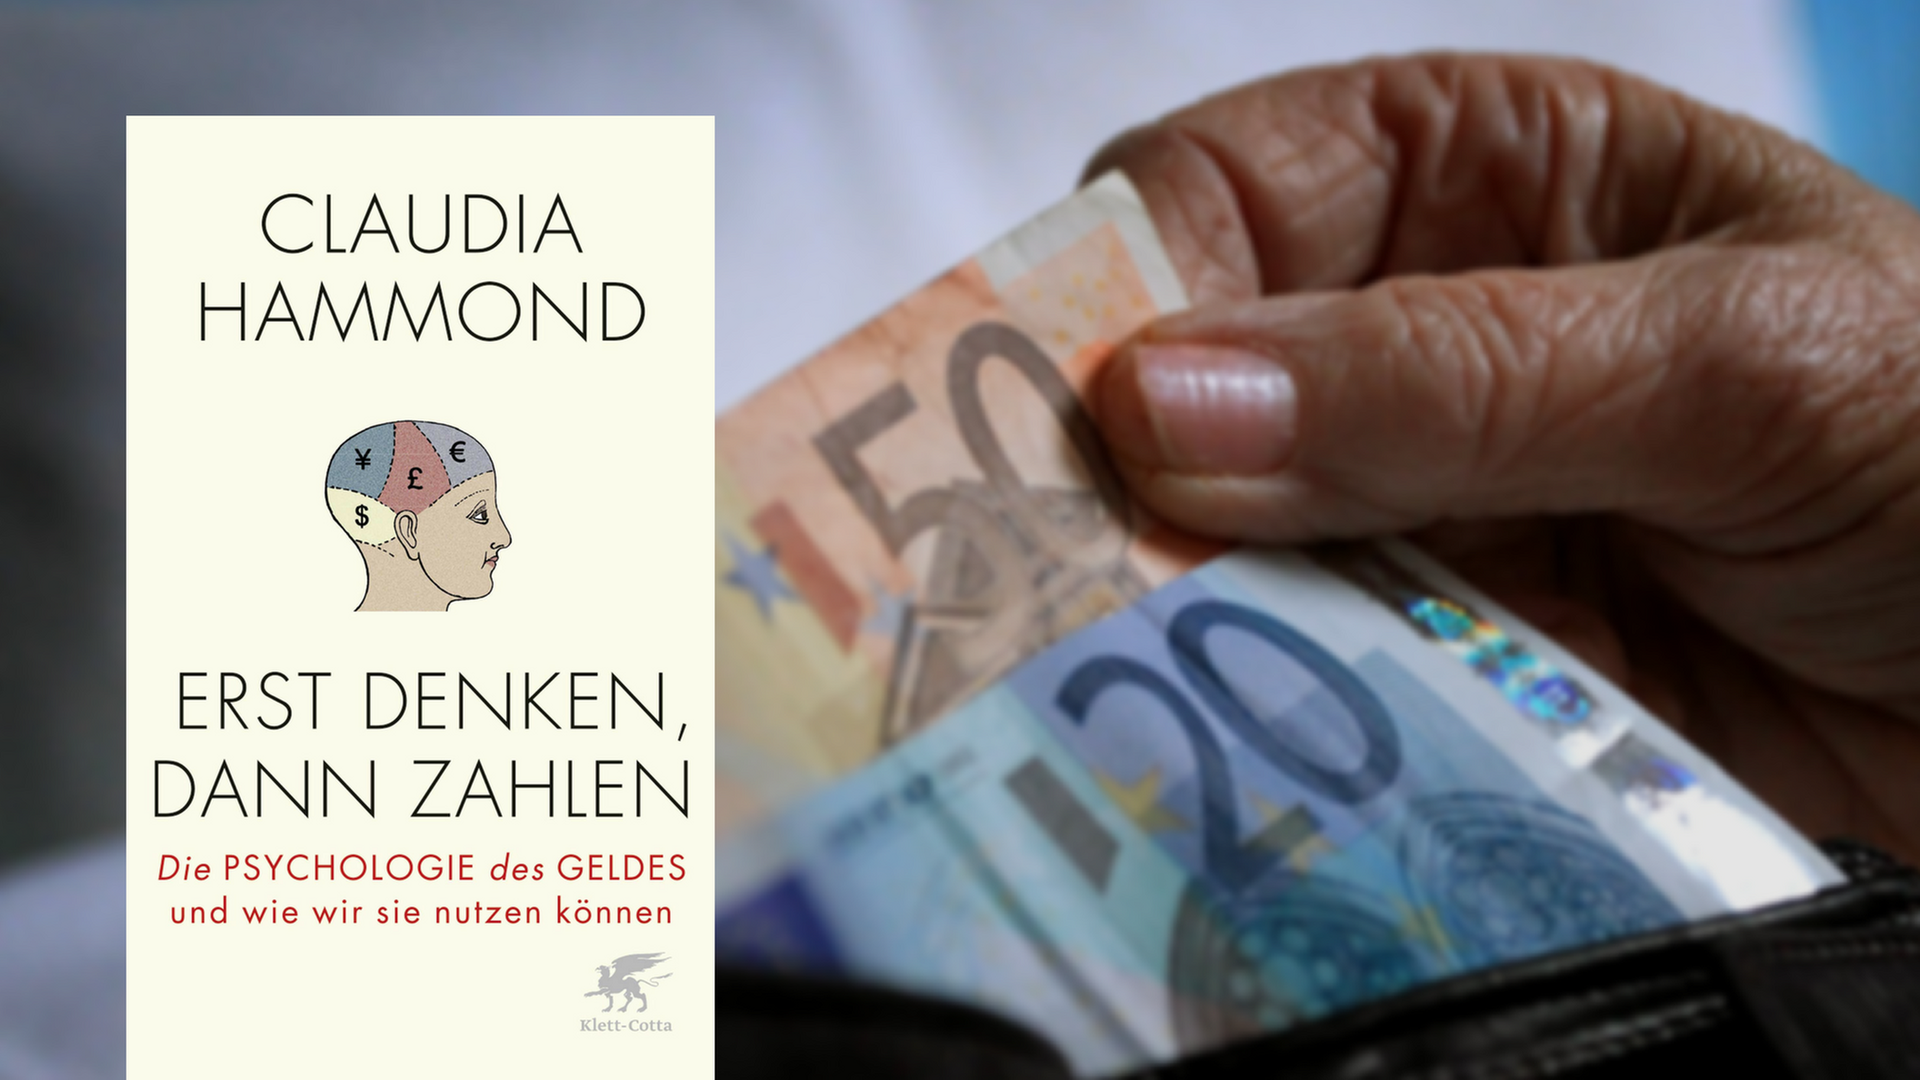 Buchcover: "Erst denken, dann zahlen" von Claudia Hammond. Im Hintergrund eine Hand, die Geld aus einer Brieftasche nimmt.